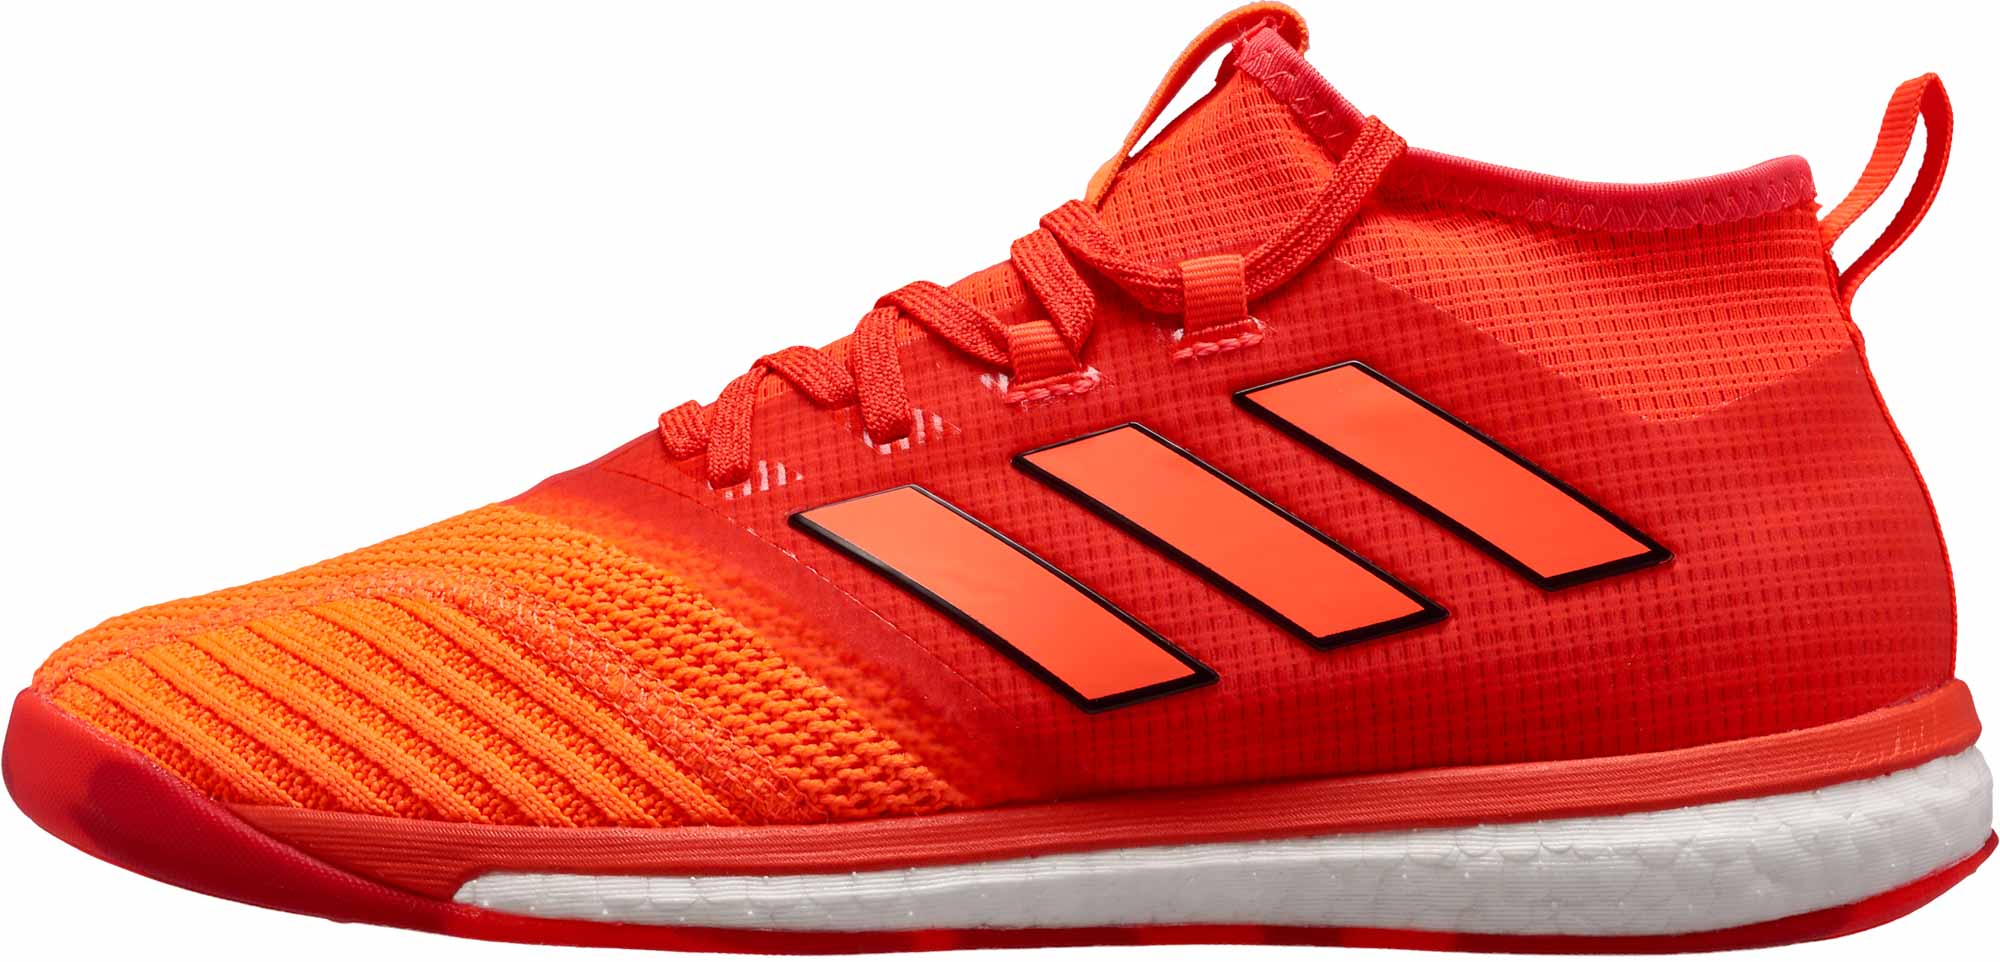 adidas ACE Tango 17.1 Trainer - Solar Red & Orange